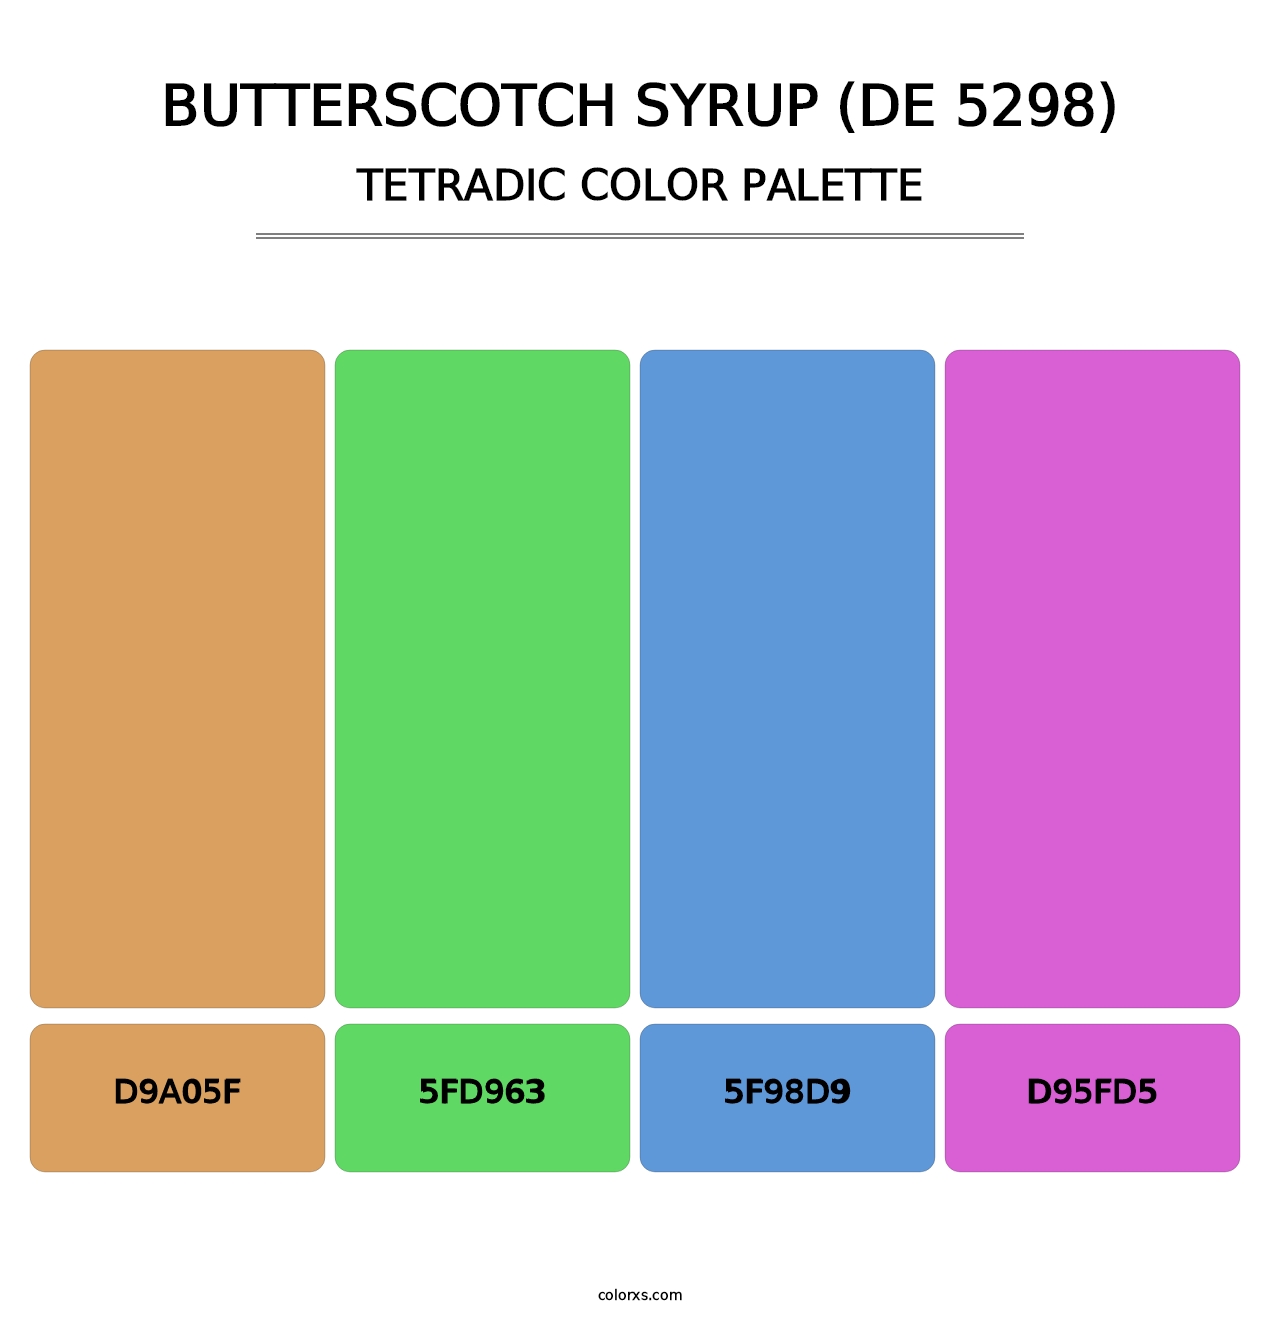 Butterscotch Syrup (DE 5298) - Tetradic Color Palette